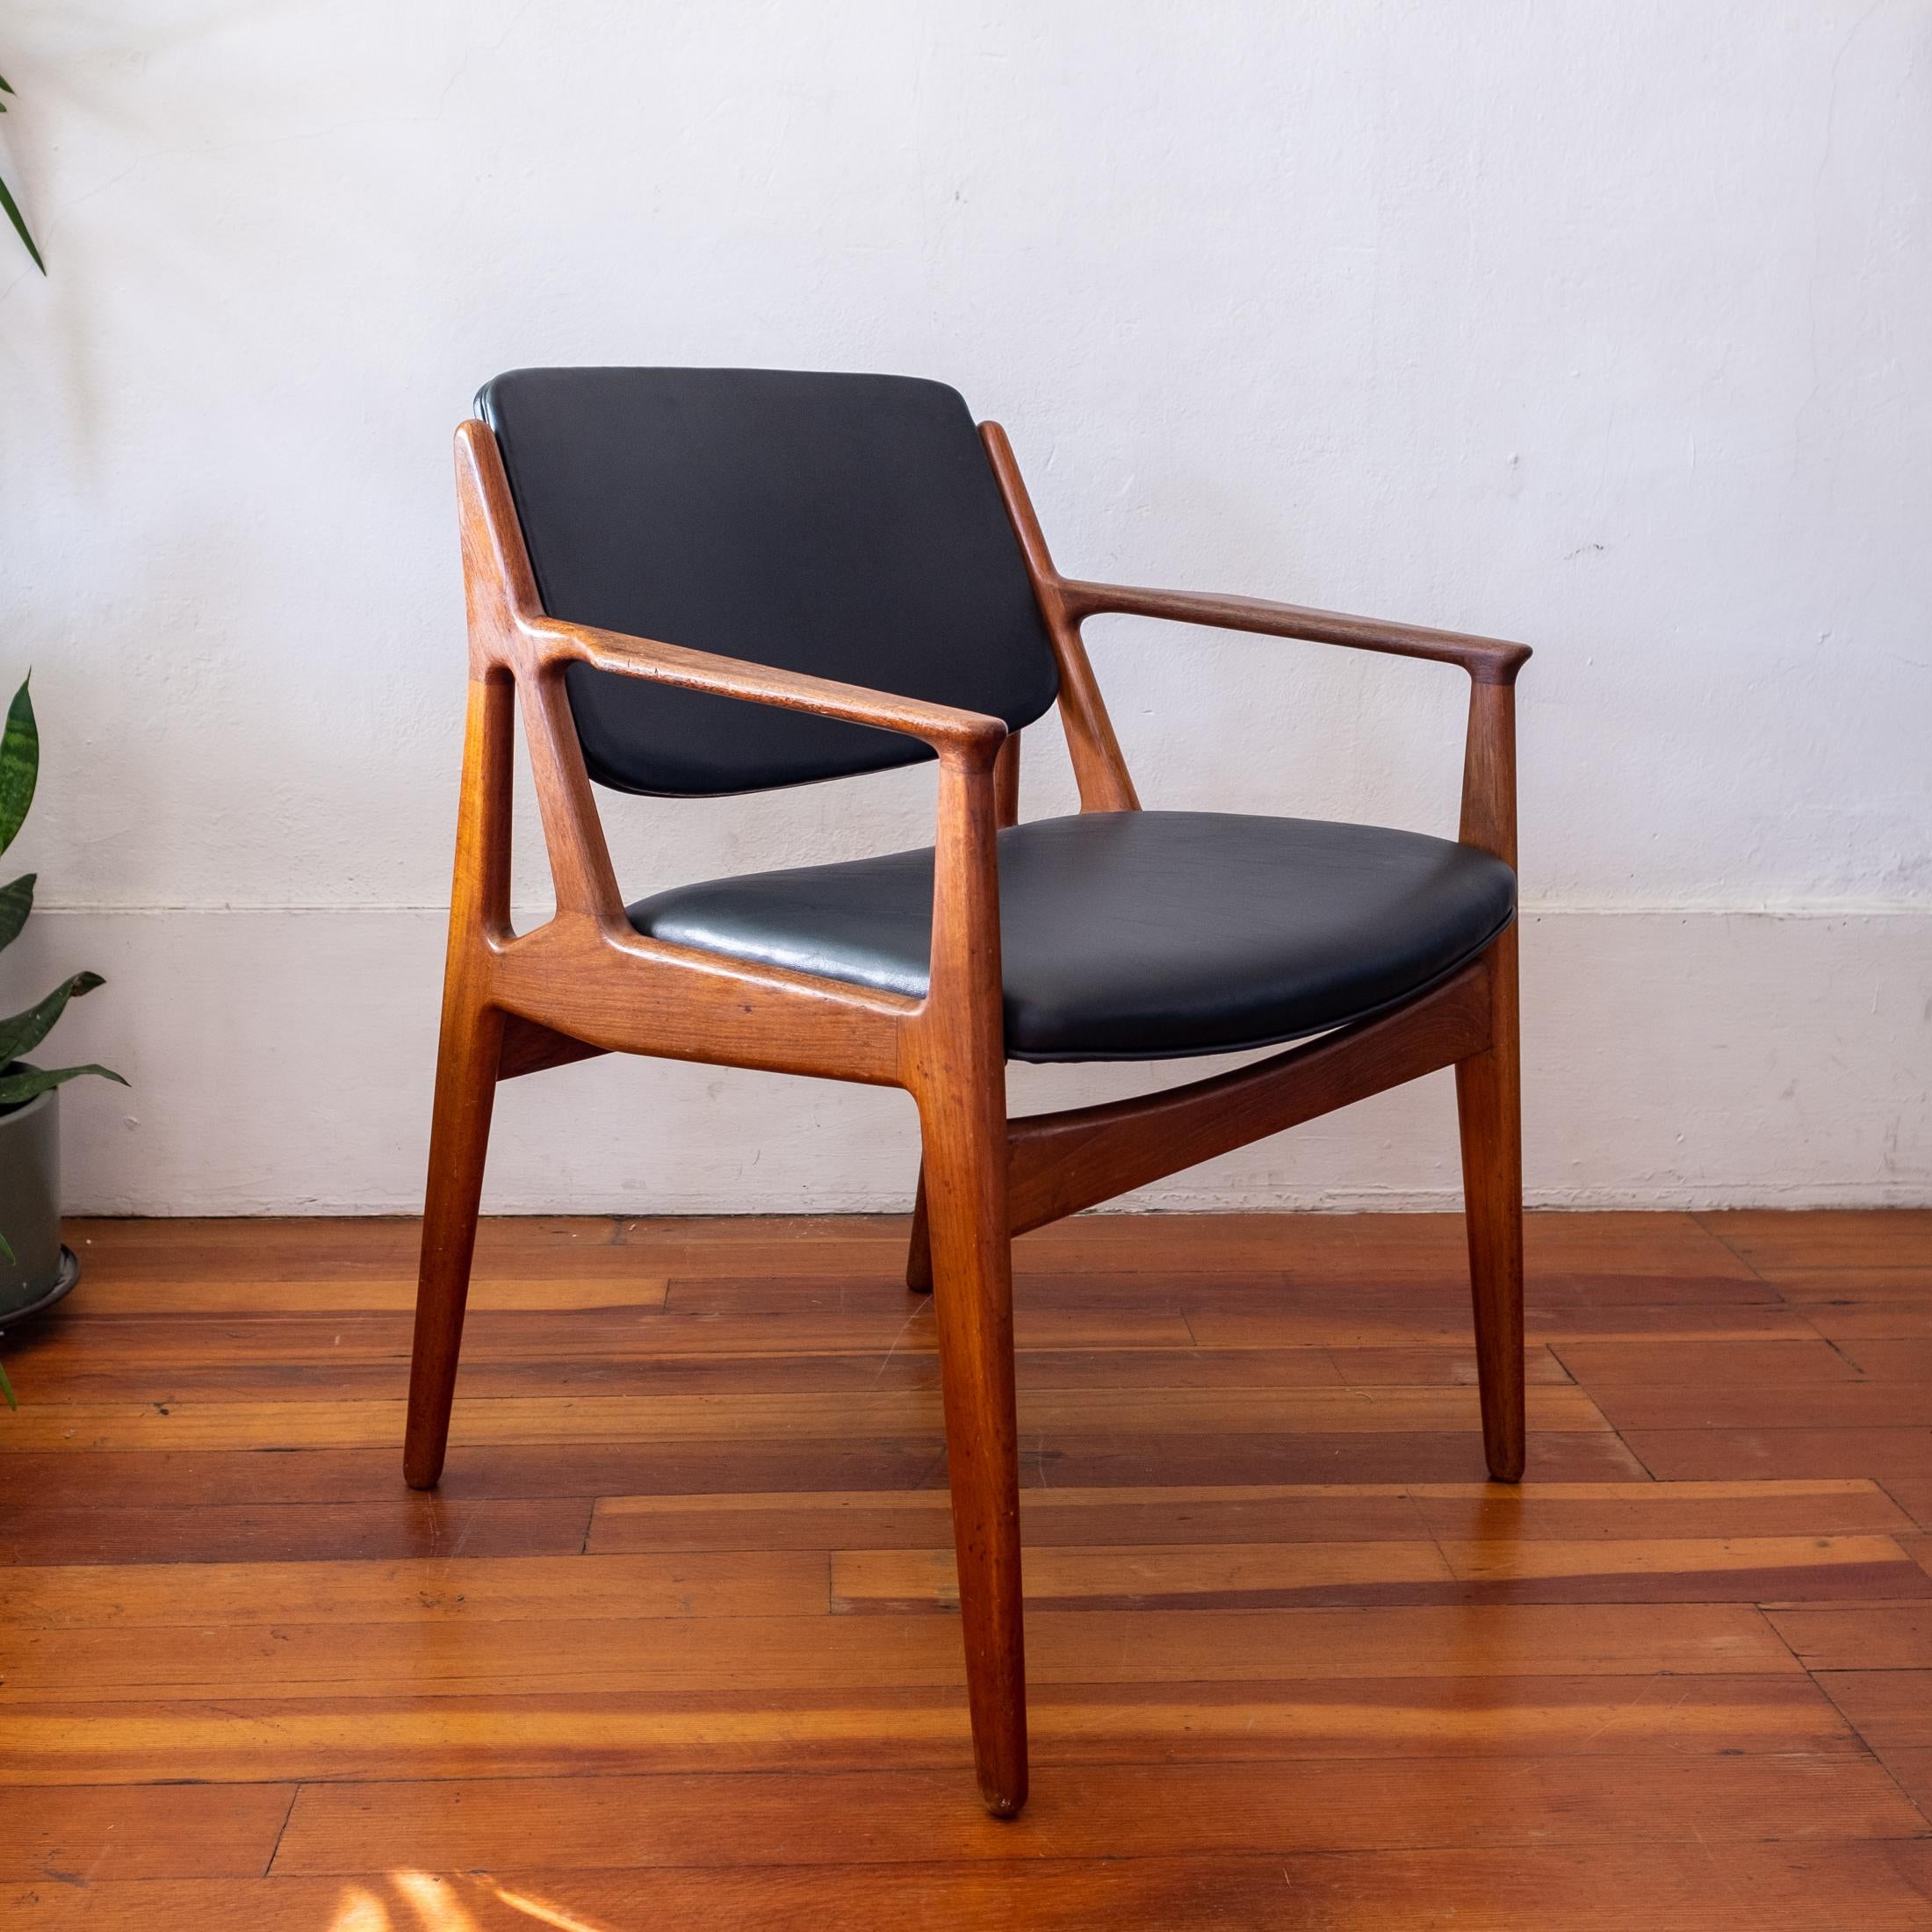 Arne Vodder Vamo Ella teak arm chair. Architectural teak frame and swivel back. Denmark, 1960s.